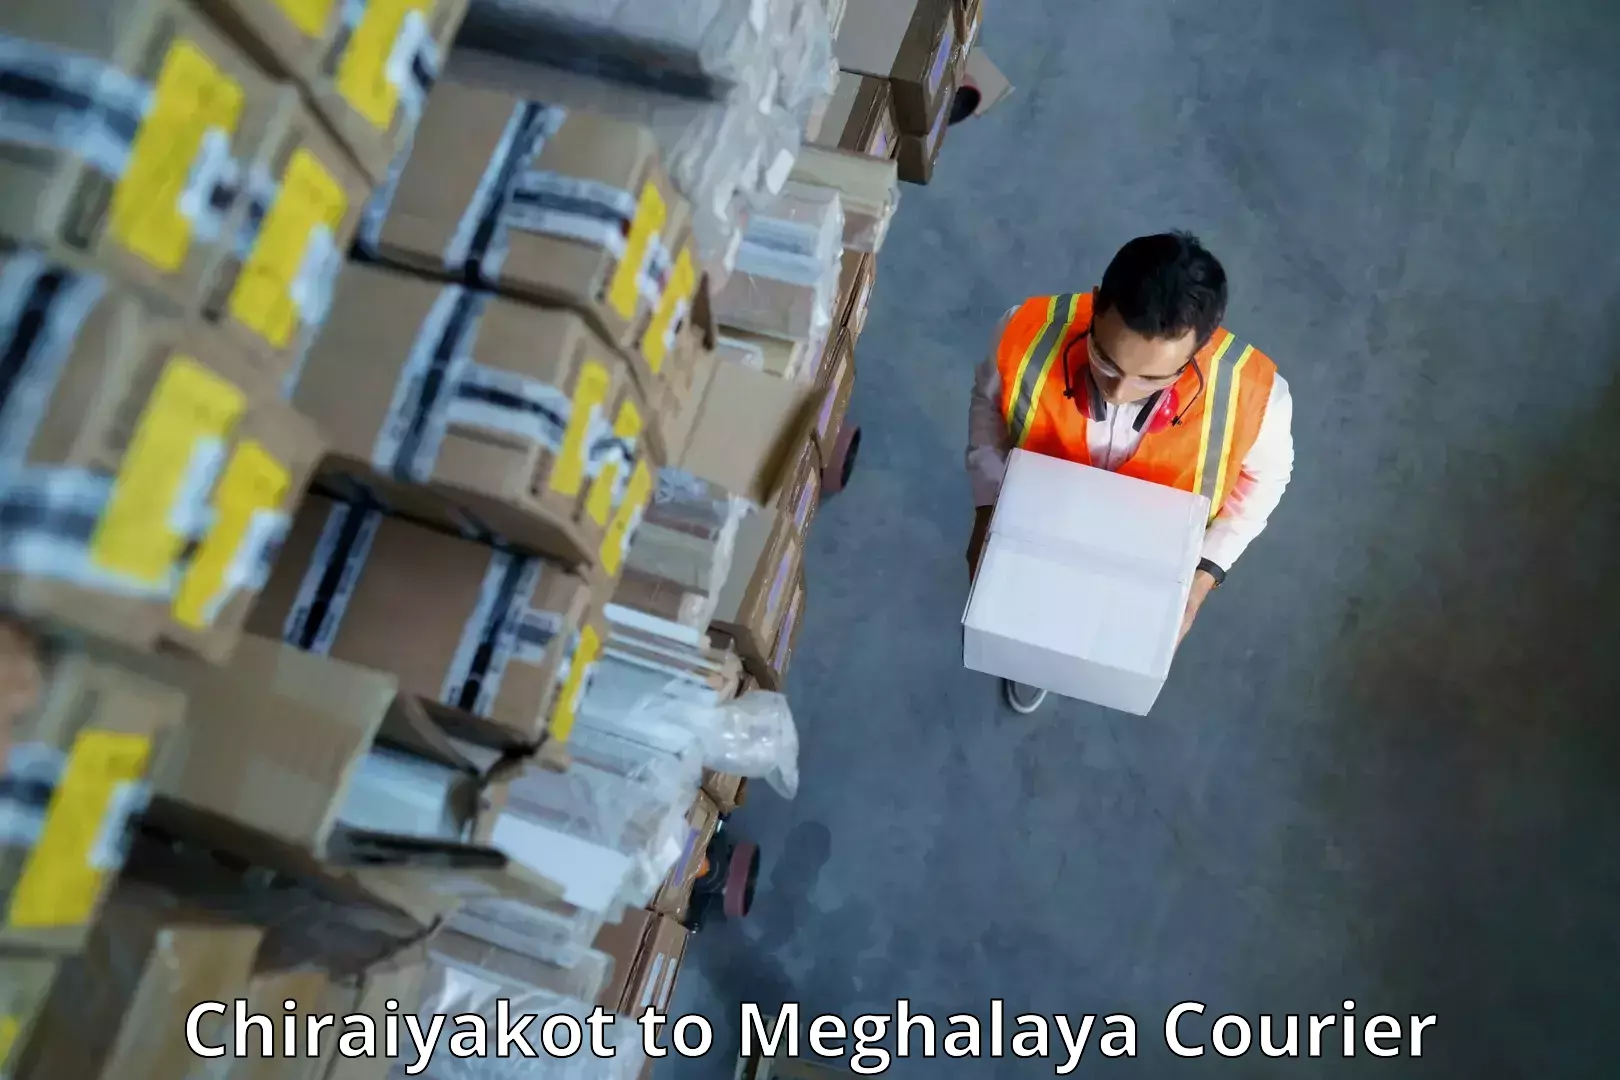 Subscription-based courier Chiraiyakot to Meghalaya